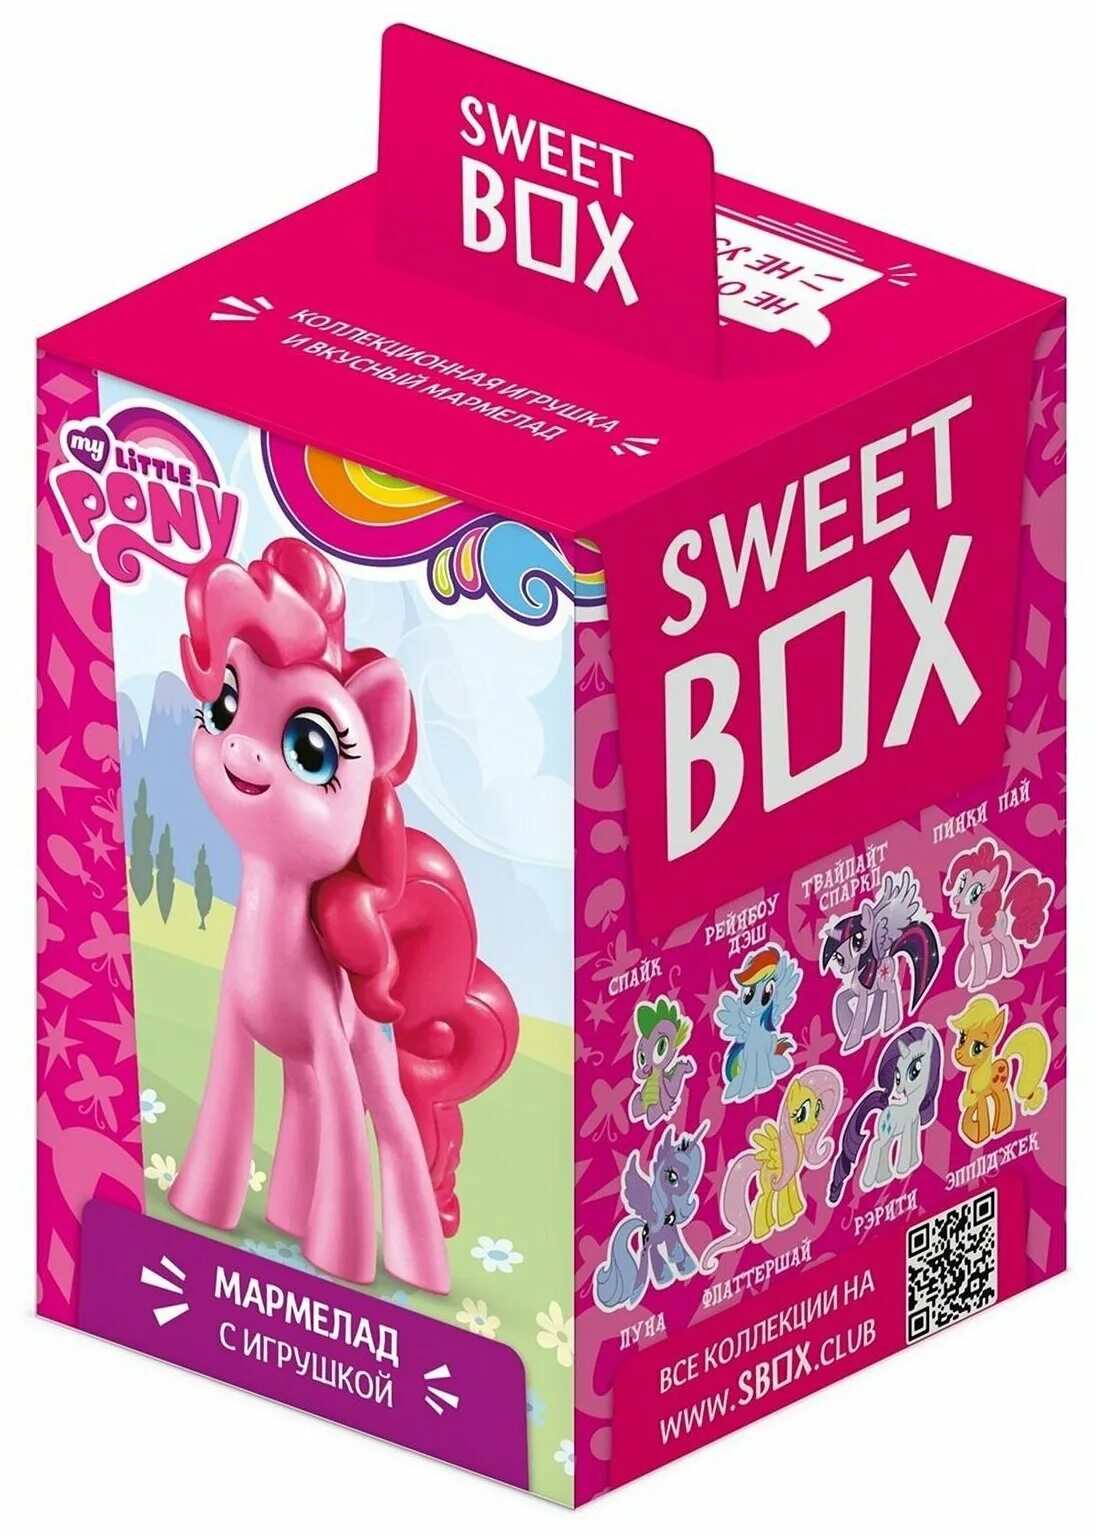 Pony box. Sweetbox Свитбокс my little Pony. Мармелад Sweet Box my little Pony с игрушкой. Sweetbox игрушки пони Sweet Box пони игрушки. Box my little Pony Свит бокс.